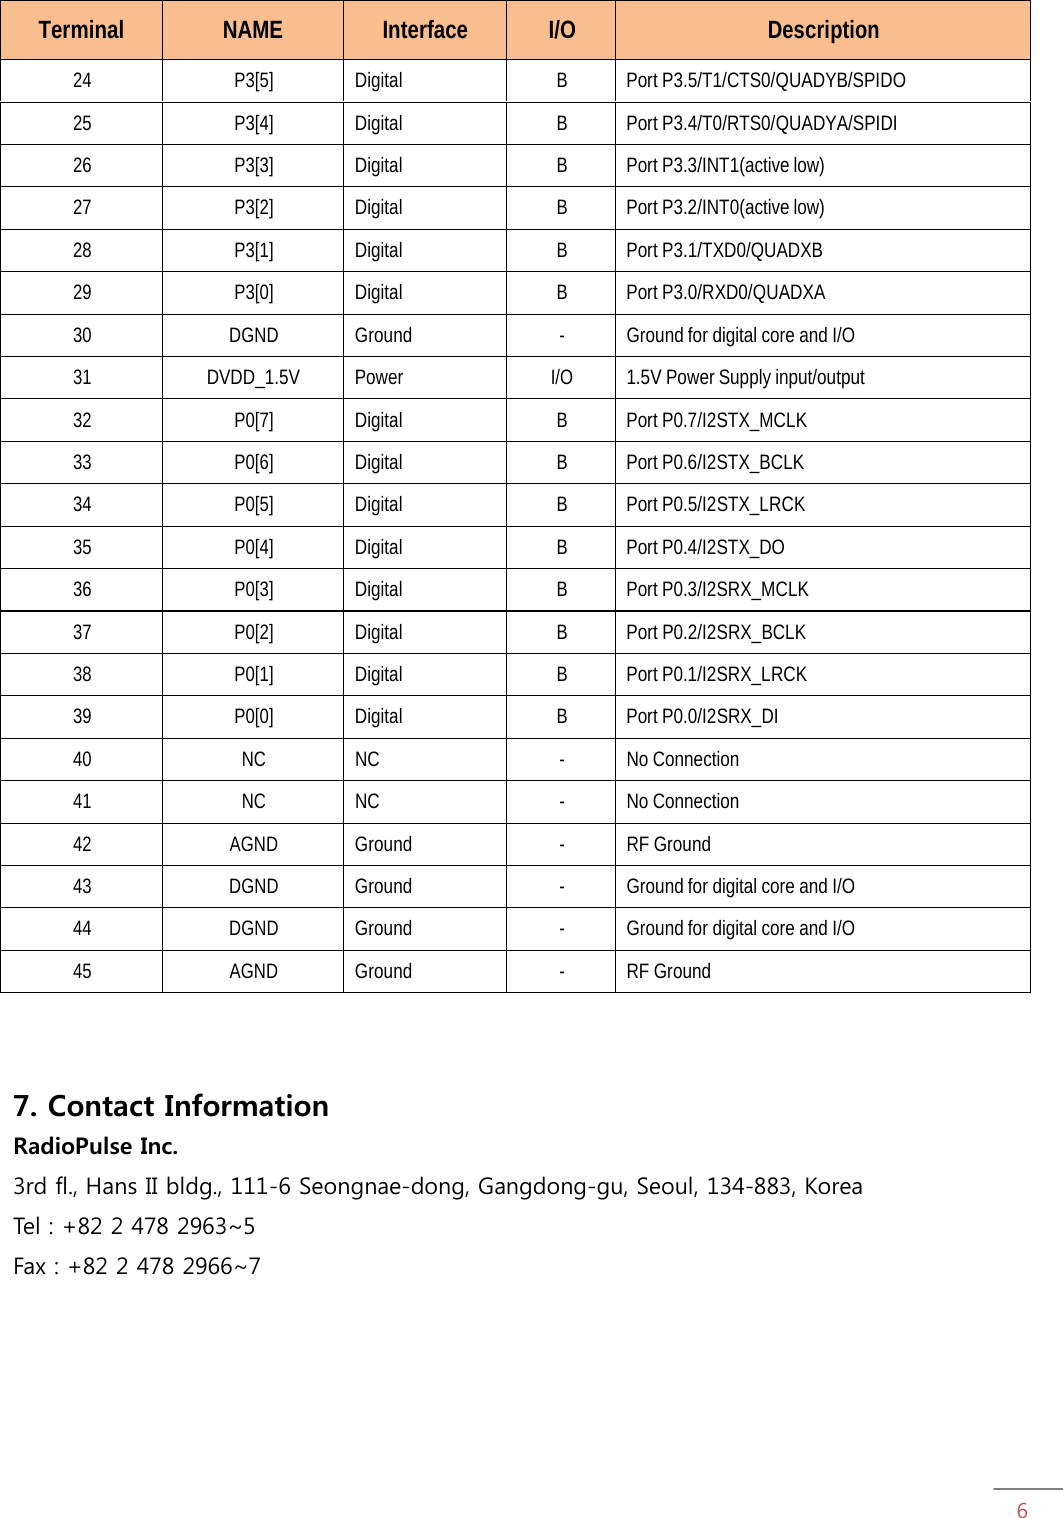 6Terminal NAME Interface I/O Description 24 P3[5] Digital B Port P3.5/T1/CTS0/QUADYB/SPIDO 25 P3[4] Digital B Port P3.4/T0/RTS0/QUADYA/SPIDI 26 P3[3] Digital B Port P3.3/INT1(active low) 27 P3[2] Digital B Port P3.2/INT0(active low) 28 P3[1] Digital B Port P3.1/TXD0/QUADXB 29 P3[0] Digital B Port P3.0/RXD0/QUADXA 30 DGND Ground -  Ground for digital core and I/O 31 DVDD_1.5V Power I/O  1.5V Power Supply input/output 32 P0[7] Digital B Port P0.7/I2STX_MCLK 33 P0[6] Digital B Port P0.6/I2STX_BCLK 34 P0[5] Digital B Port P0.5/I2STX_LRCK 35 P0[4] Digital B Port P0.4/I2STX_DO 36 P0[3] Digital B Port P0.3/I2SRX_MCLK 37 P0[2] Digital B Port P0.2/I2SRX_BCLK 38 P0[1] Digital B Port P0.1/I2SRX_LRCK 39 P0[0] Digital B Port P0.0/I2SRX_DI 40 NC NC - No Connection 41 NC NC - No Connection 42 AGND Ground - RF Ground 43 DGND Ground -  Ground for digital core and I/O 44 DGND Ground -  Ground for digital core and I/O 45 AGND Ground - RF Ground 7. Contact Information RadioPulse Inc. 3rd fl., Hans II bldg., 111-6 Seongnae-dong, Gangdong-gu, Seoul, 134-883, Korea Tel : +82 2 478 2963~5 Fax : +82 2 478 2966~7 